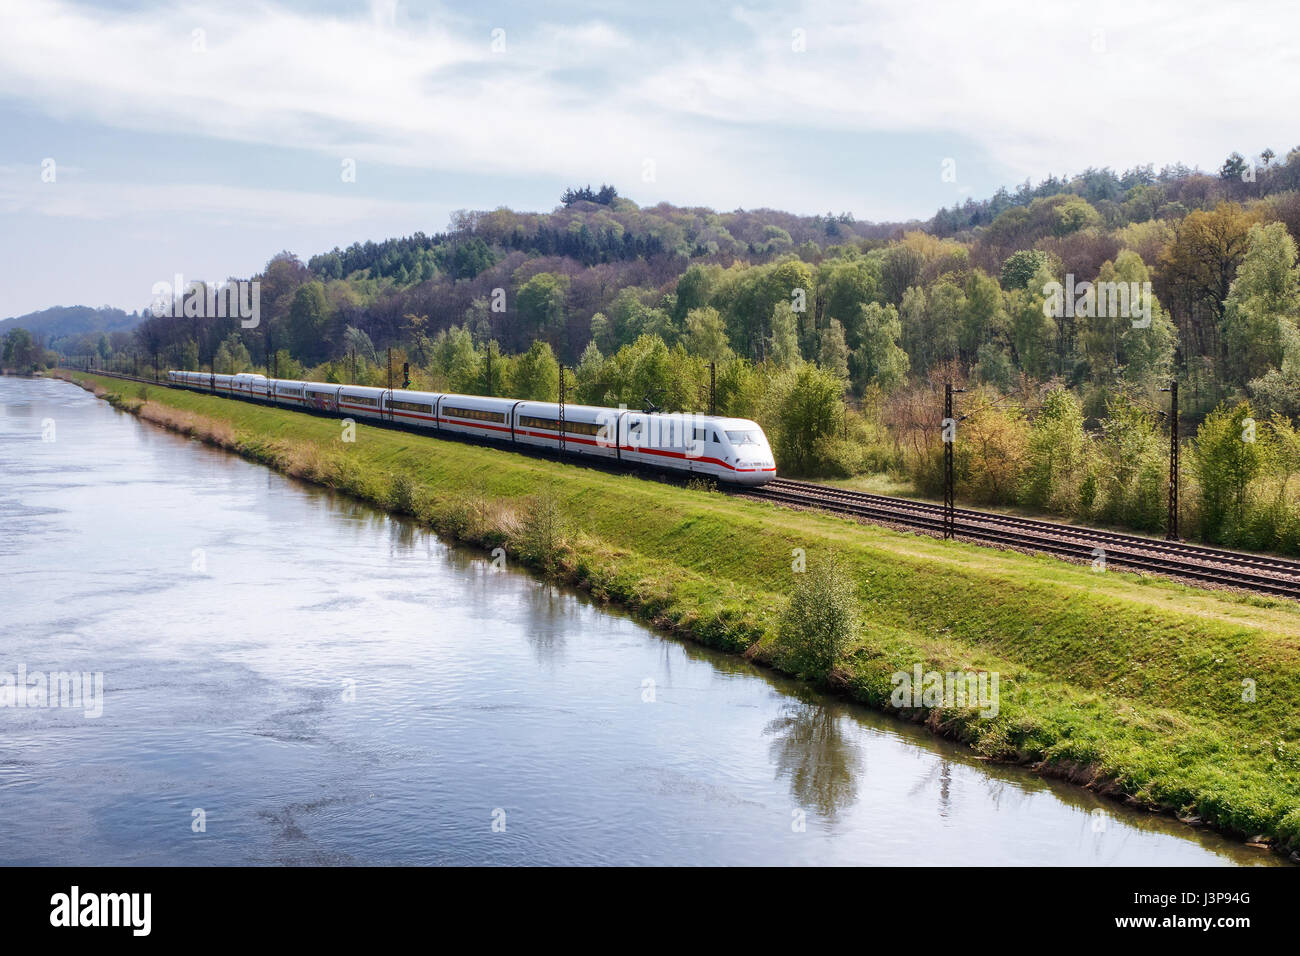 REISENSBURG, Deutschland - 6. Mai 2017: Deutschen Hochgeschwindigkeitszug ICE (Intercity-Express) an den Ufern der Donau am 6. Mai 2017 in Reisensburg, Ge Stockfoto